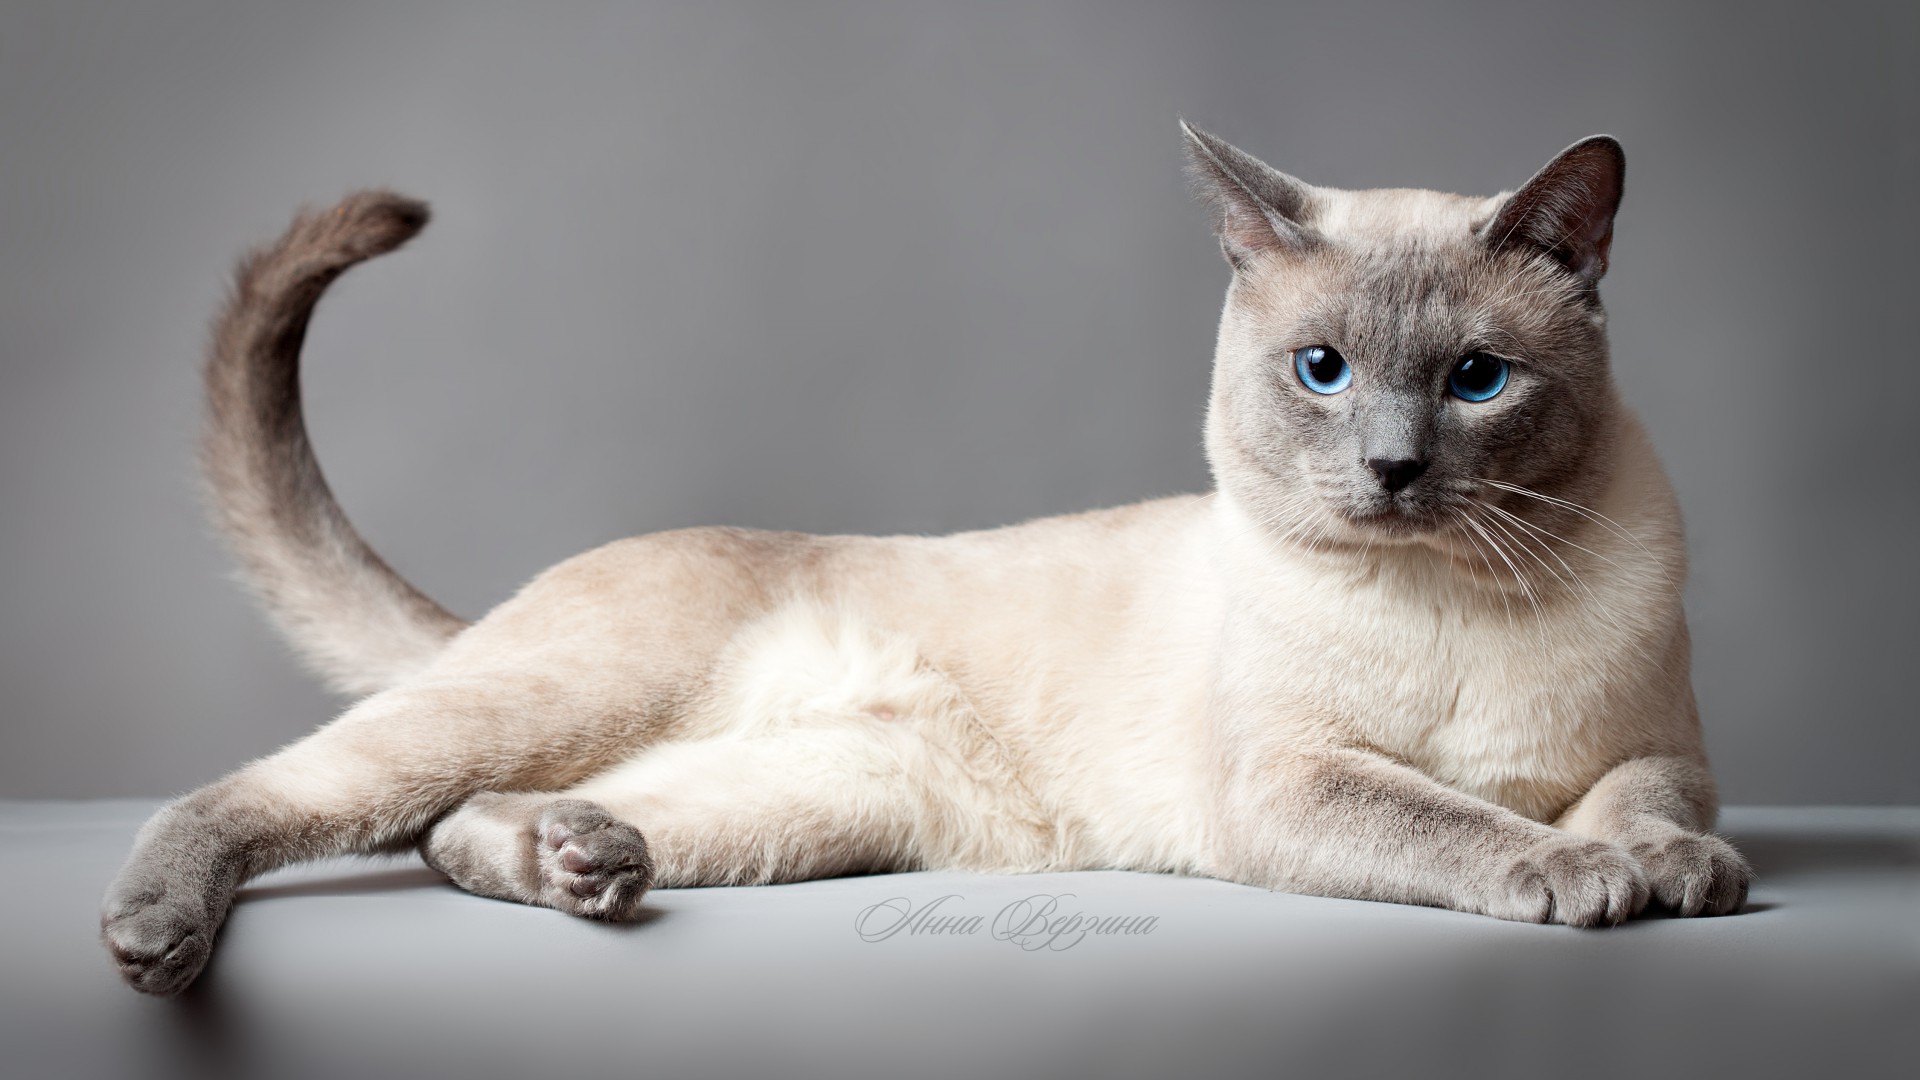 Тайская кошка, Тайский кот, голубые глаза, животное, Thai cat, blue eyes, animal (horizontal)